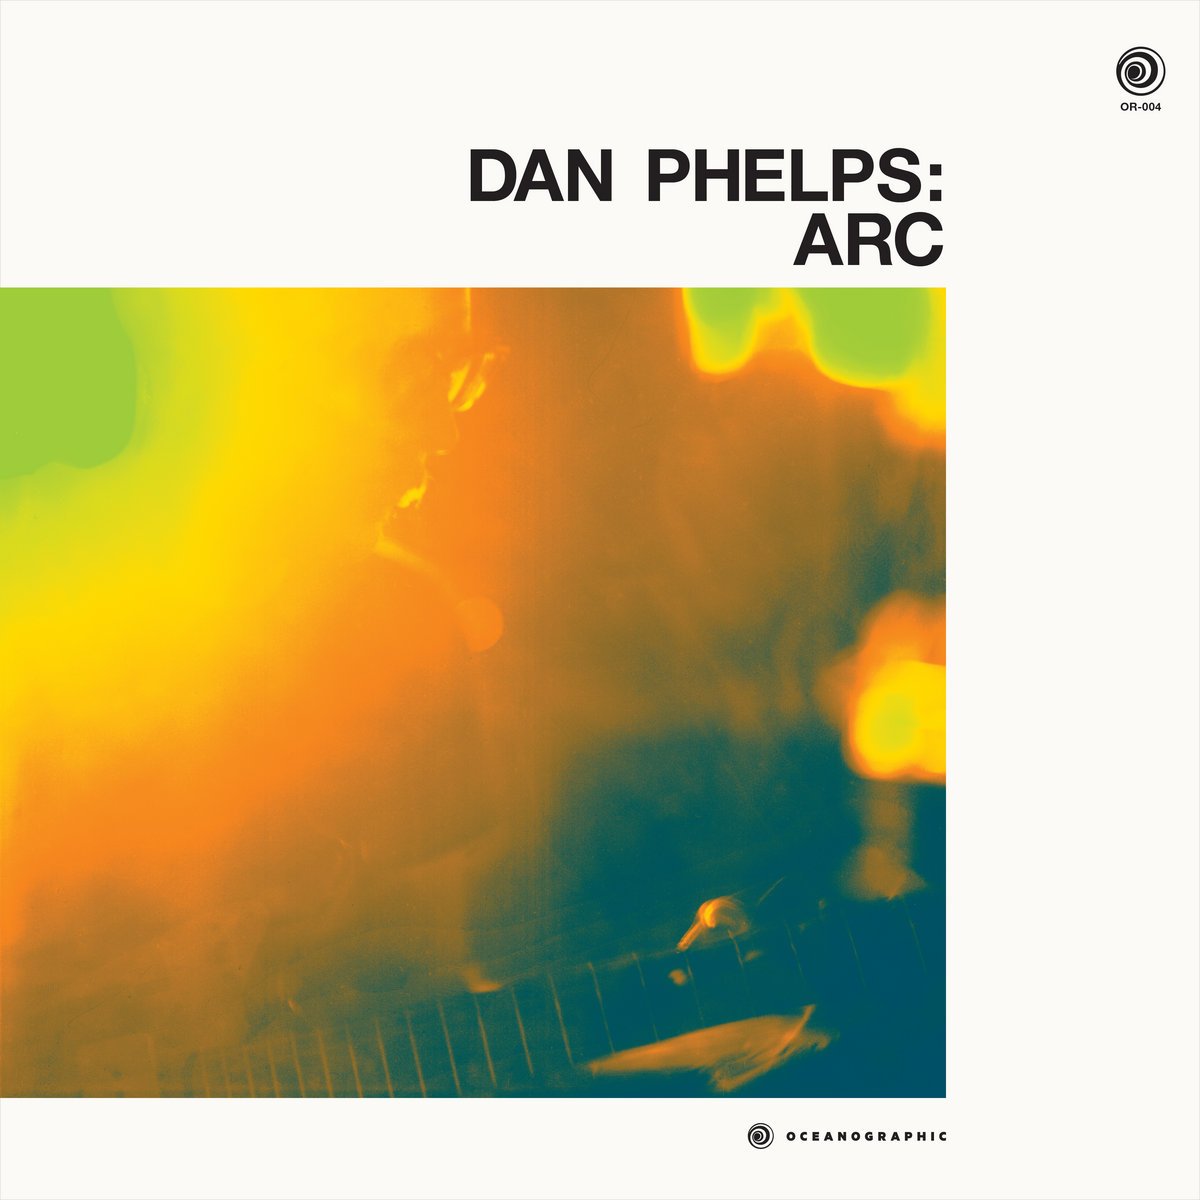 DAN PHELPS – Arc (Album, Oceanographic Records) 2016.jpeg